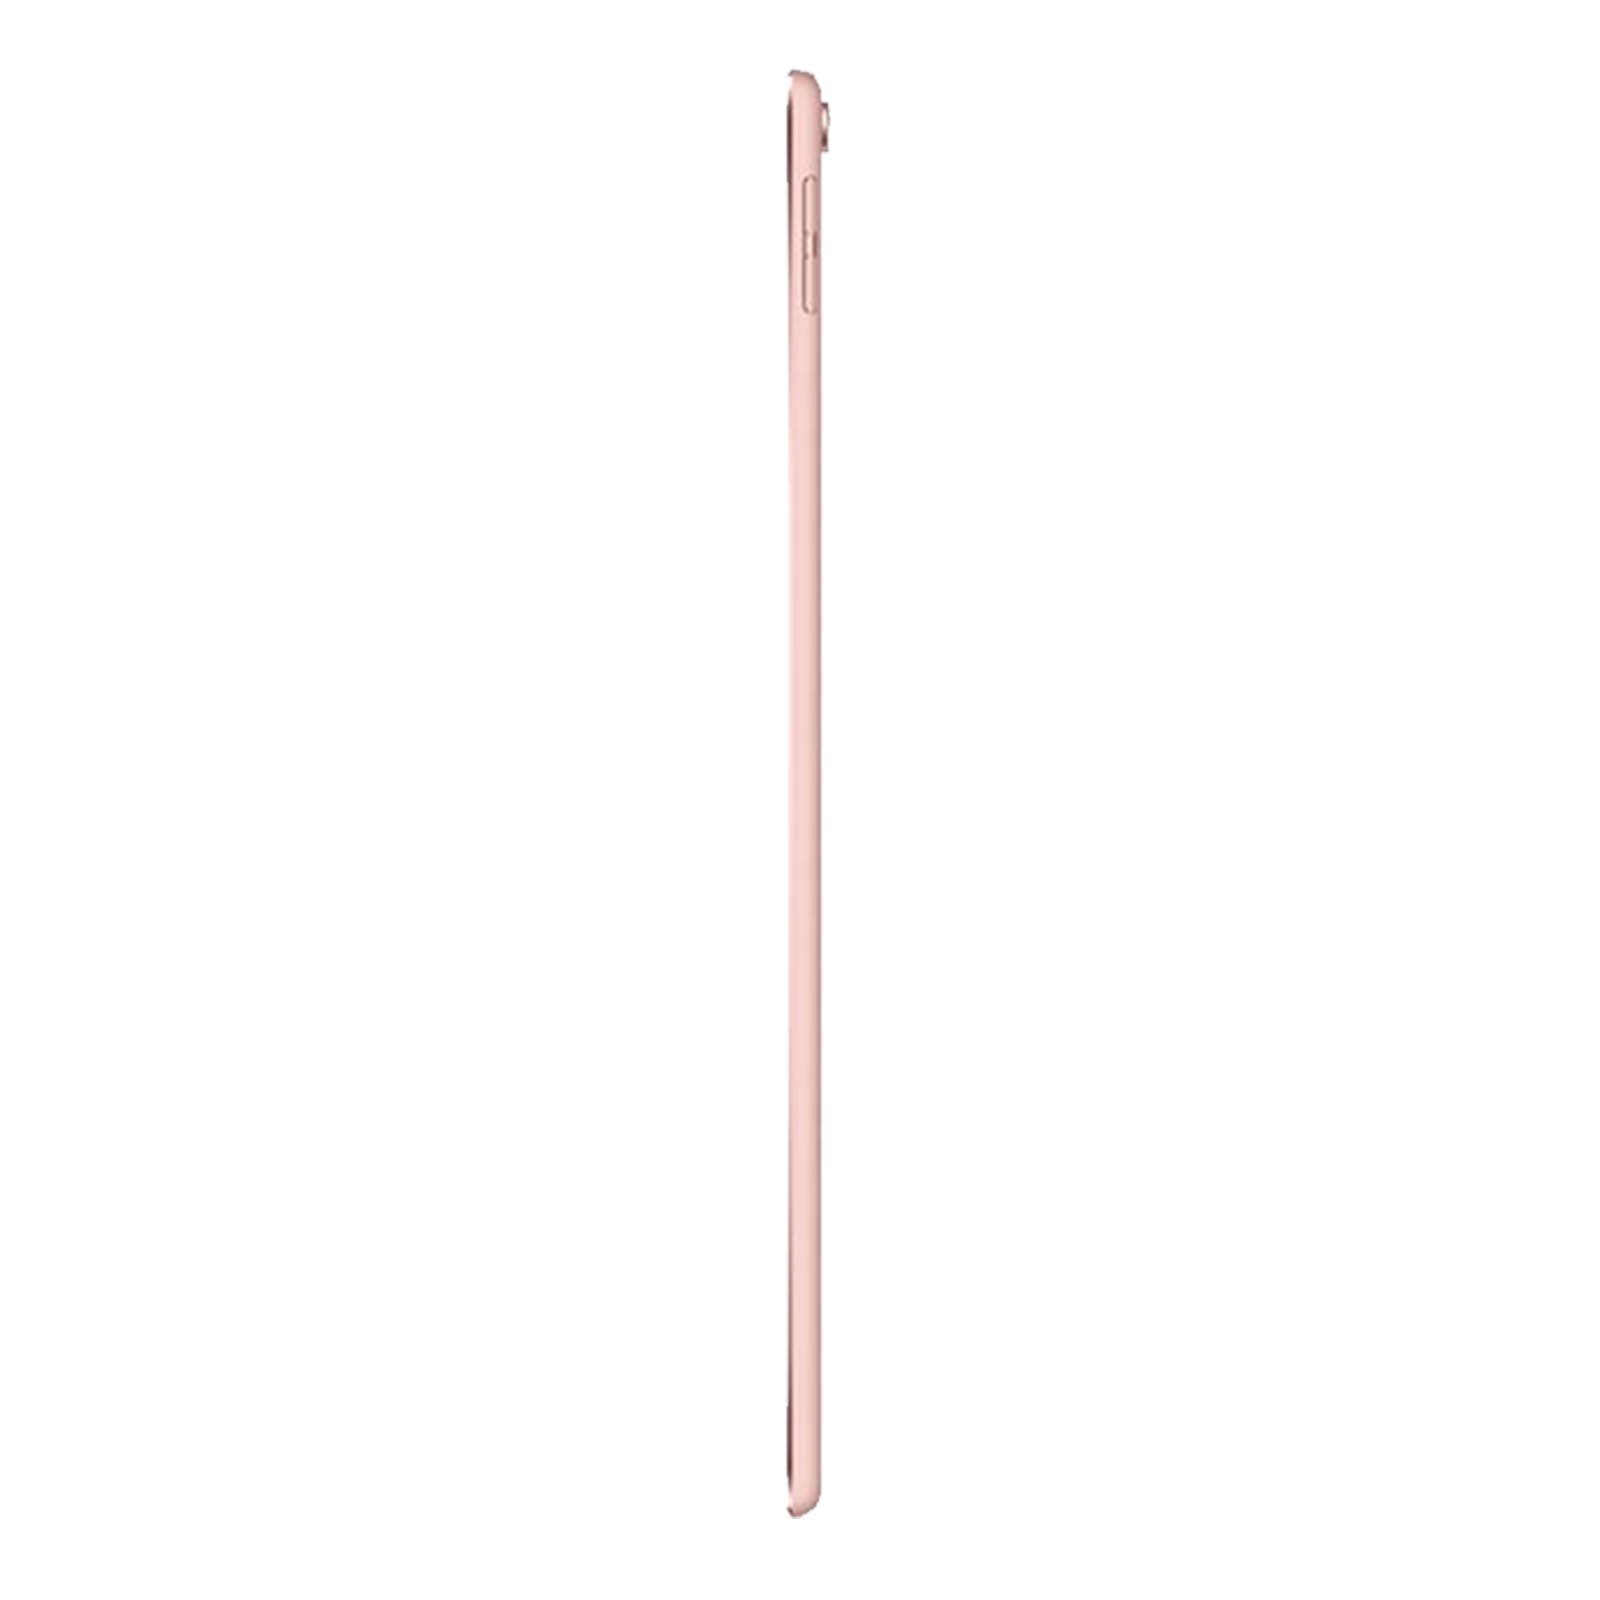 iPad Pro 10.5 Inch 512GB Rose Gold Good - WiFi